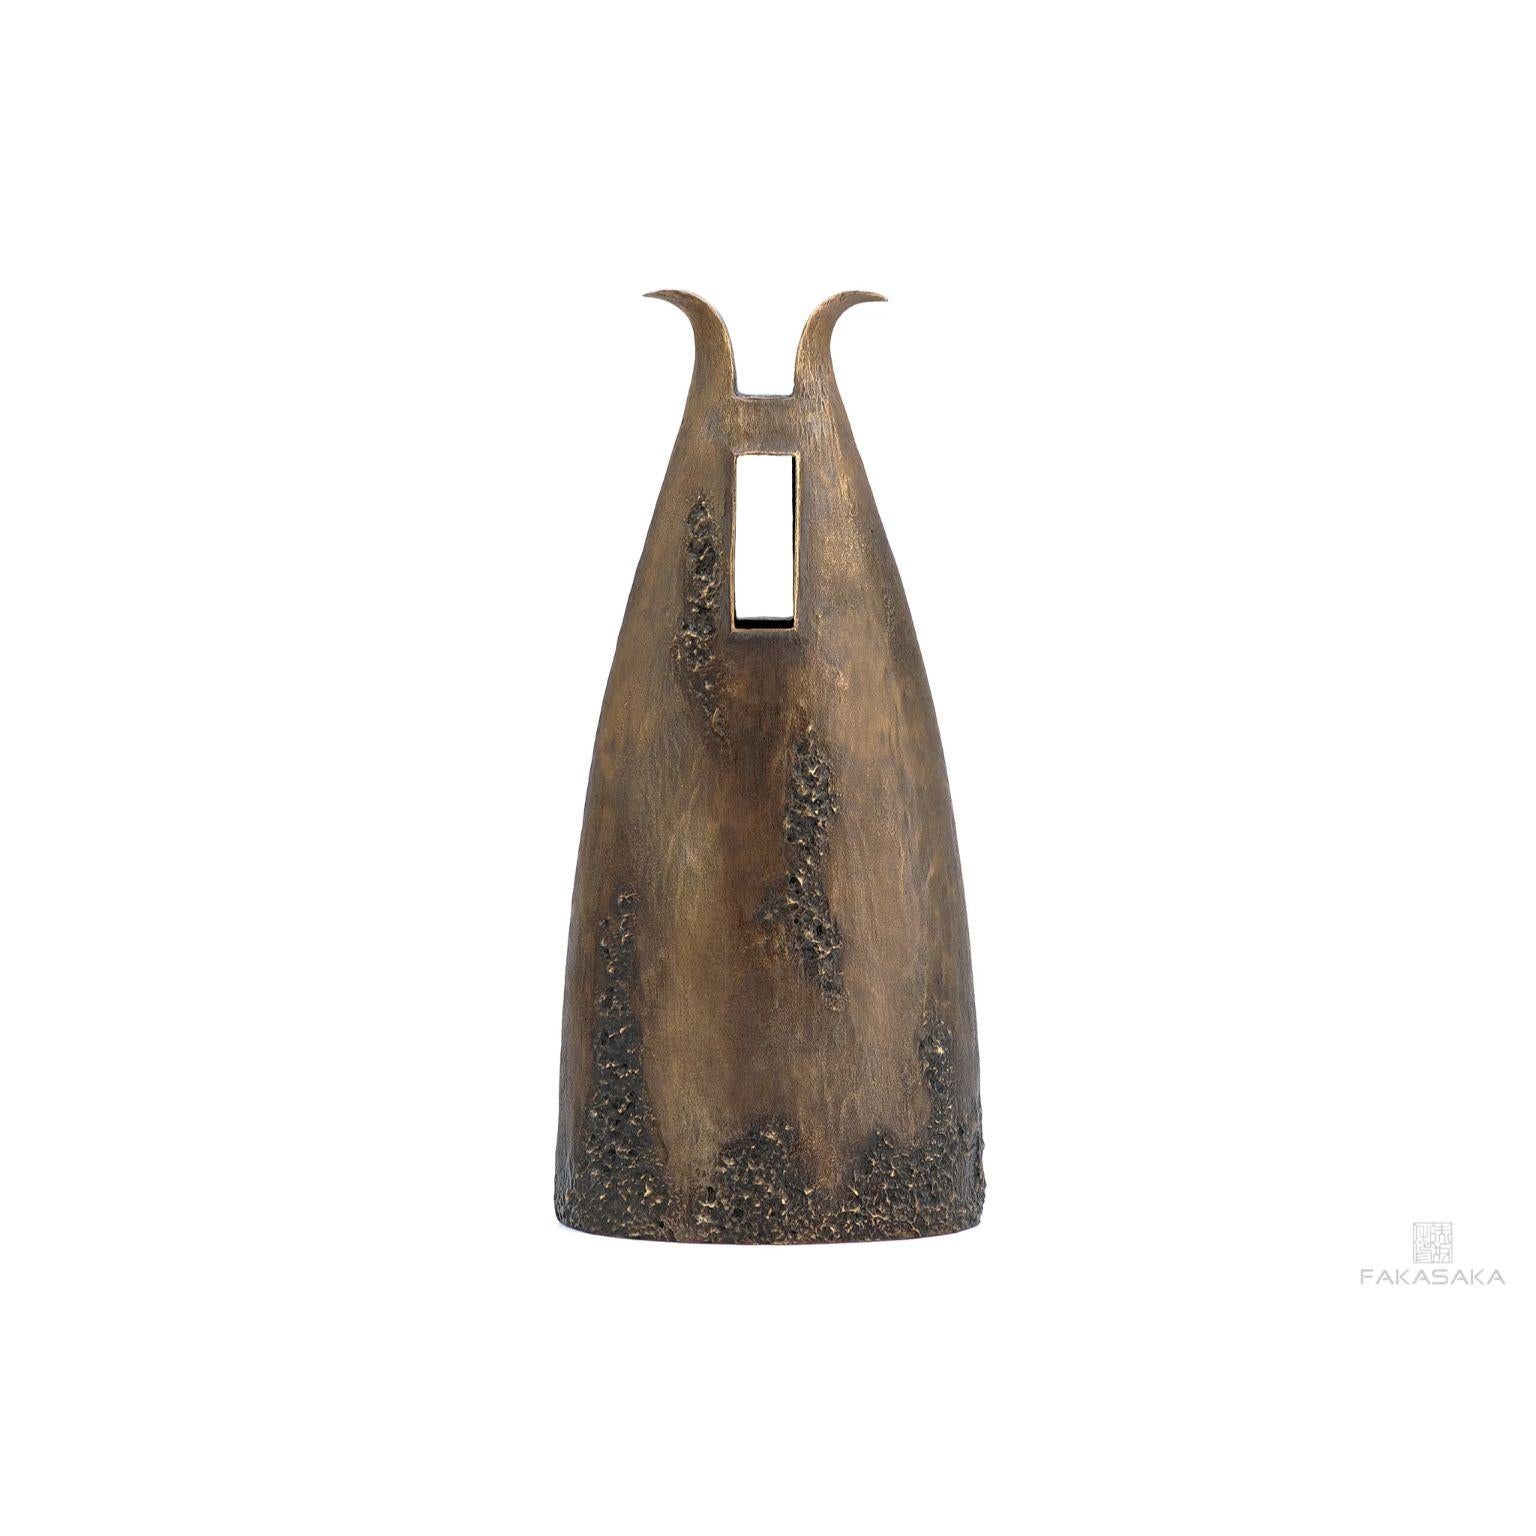 Garrym-Vase von Fakasaka Design
Abmessungen: B 19 cm T 12 cm H 41,5 cm.
MATERIALIEN: Dunkle Bronze.

 FAKASAKA ist ein Designunternehmen, das sich auf die Herstellung von hochwertigen Möbeln, Leuchten, Dekorationsobjekten, Juwelen und Accessoires